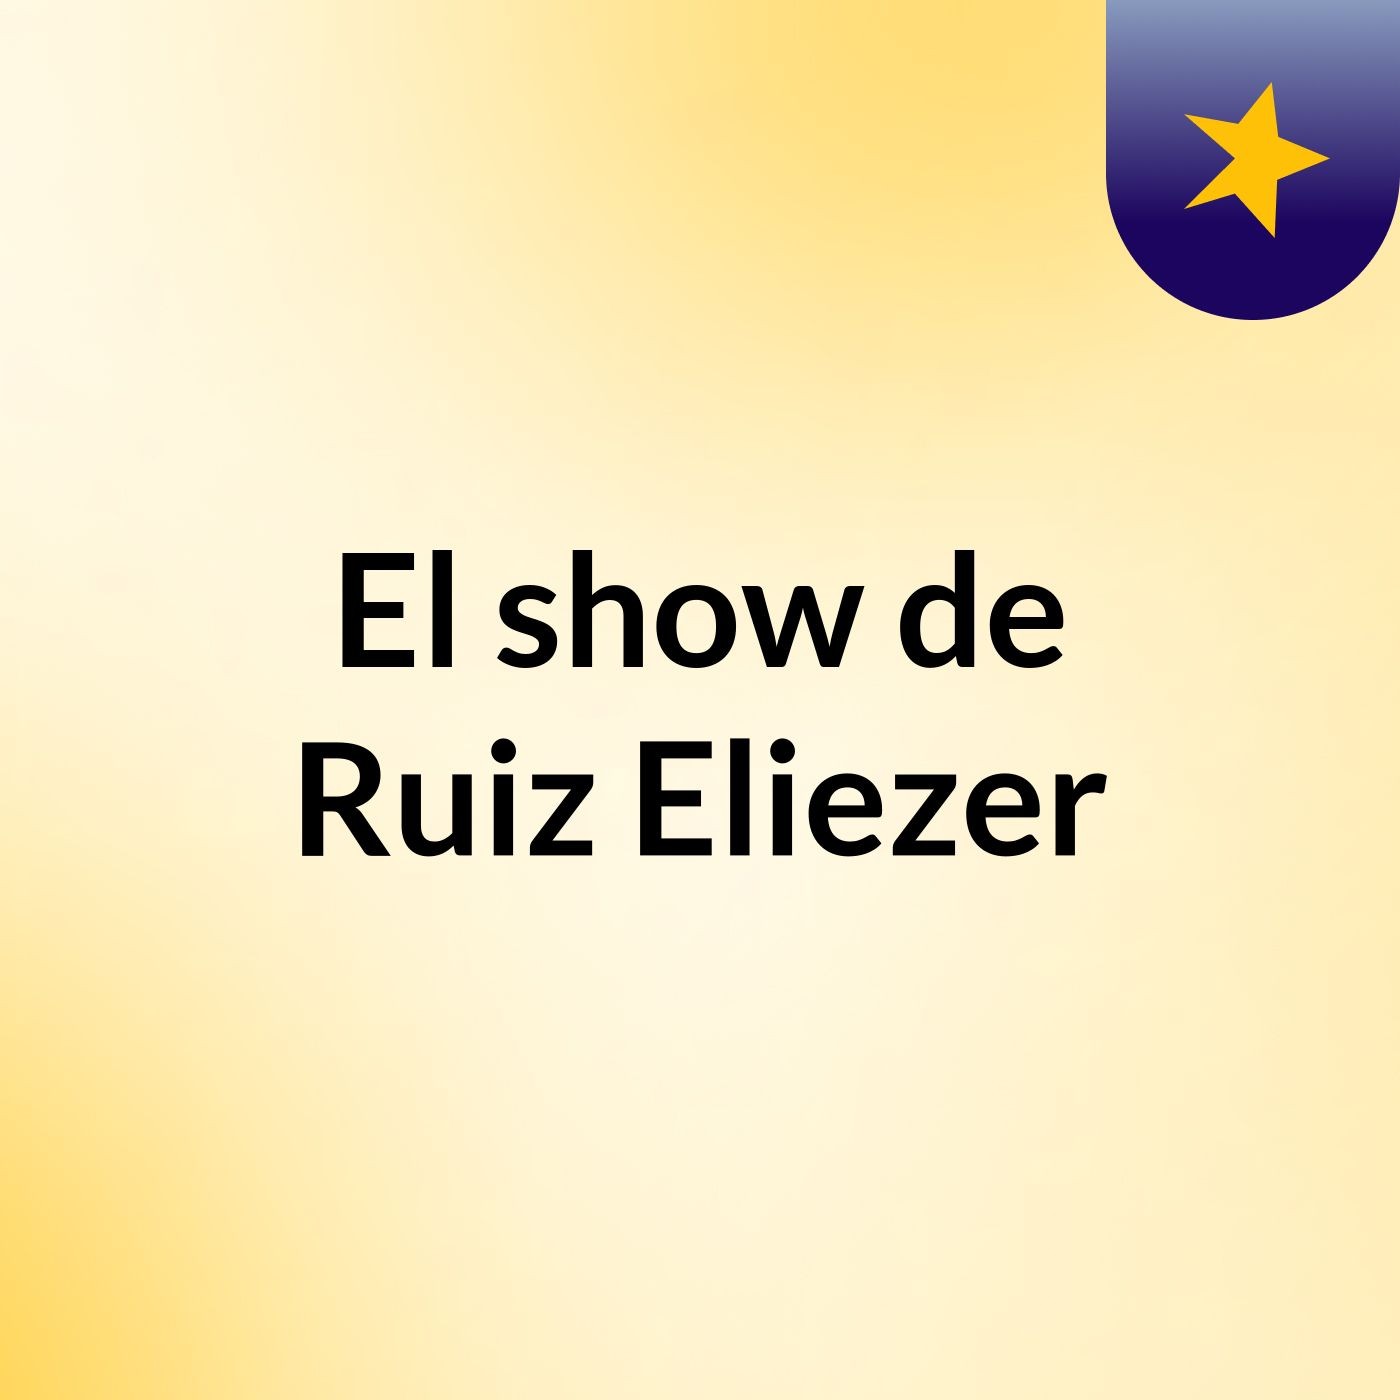 El show de Ruiz Eliezer